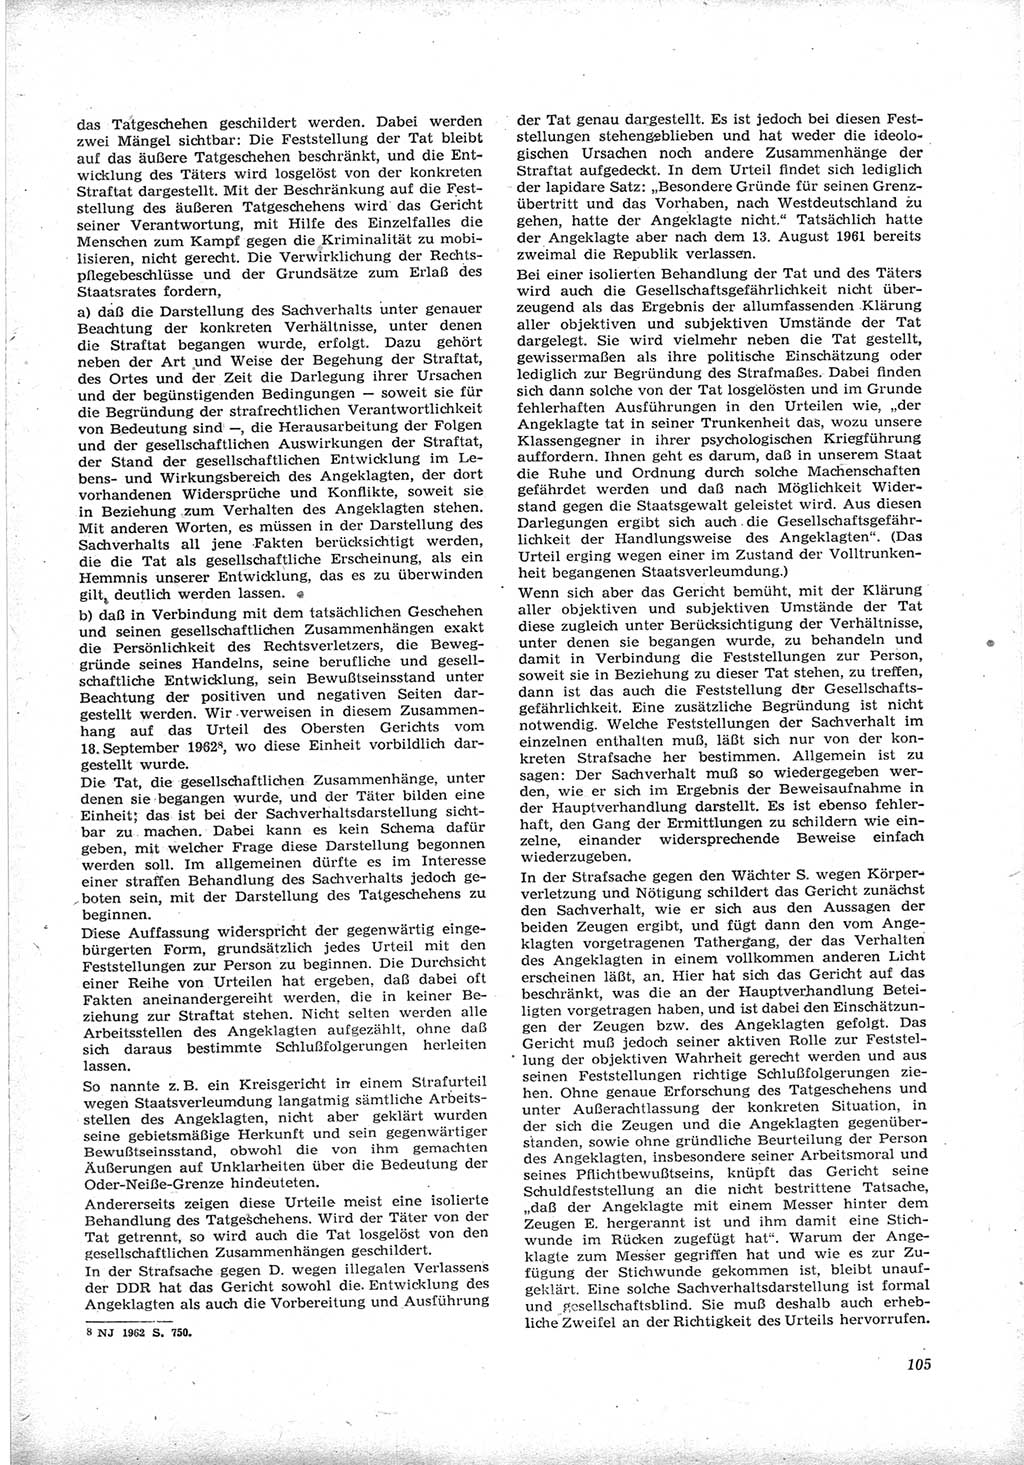 Neue Justiz (NJ), Zeitschrift für Recht und Rechtswissenschaft [Deutsche Demokratische Republik (DDR)], 17. Jahrgang 1963, Seite 105 (NJ DDR 1963, S. 105)